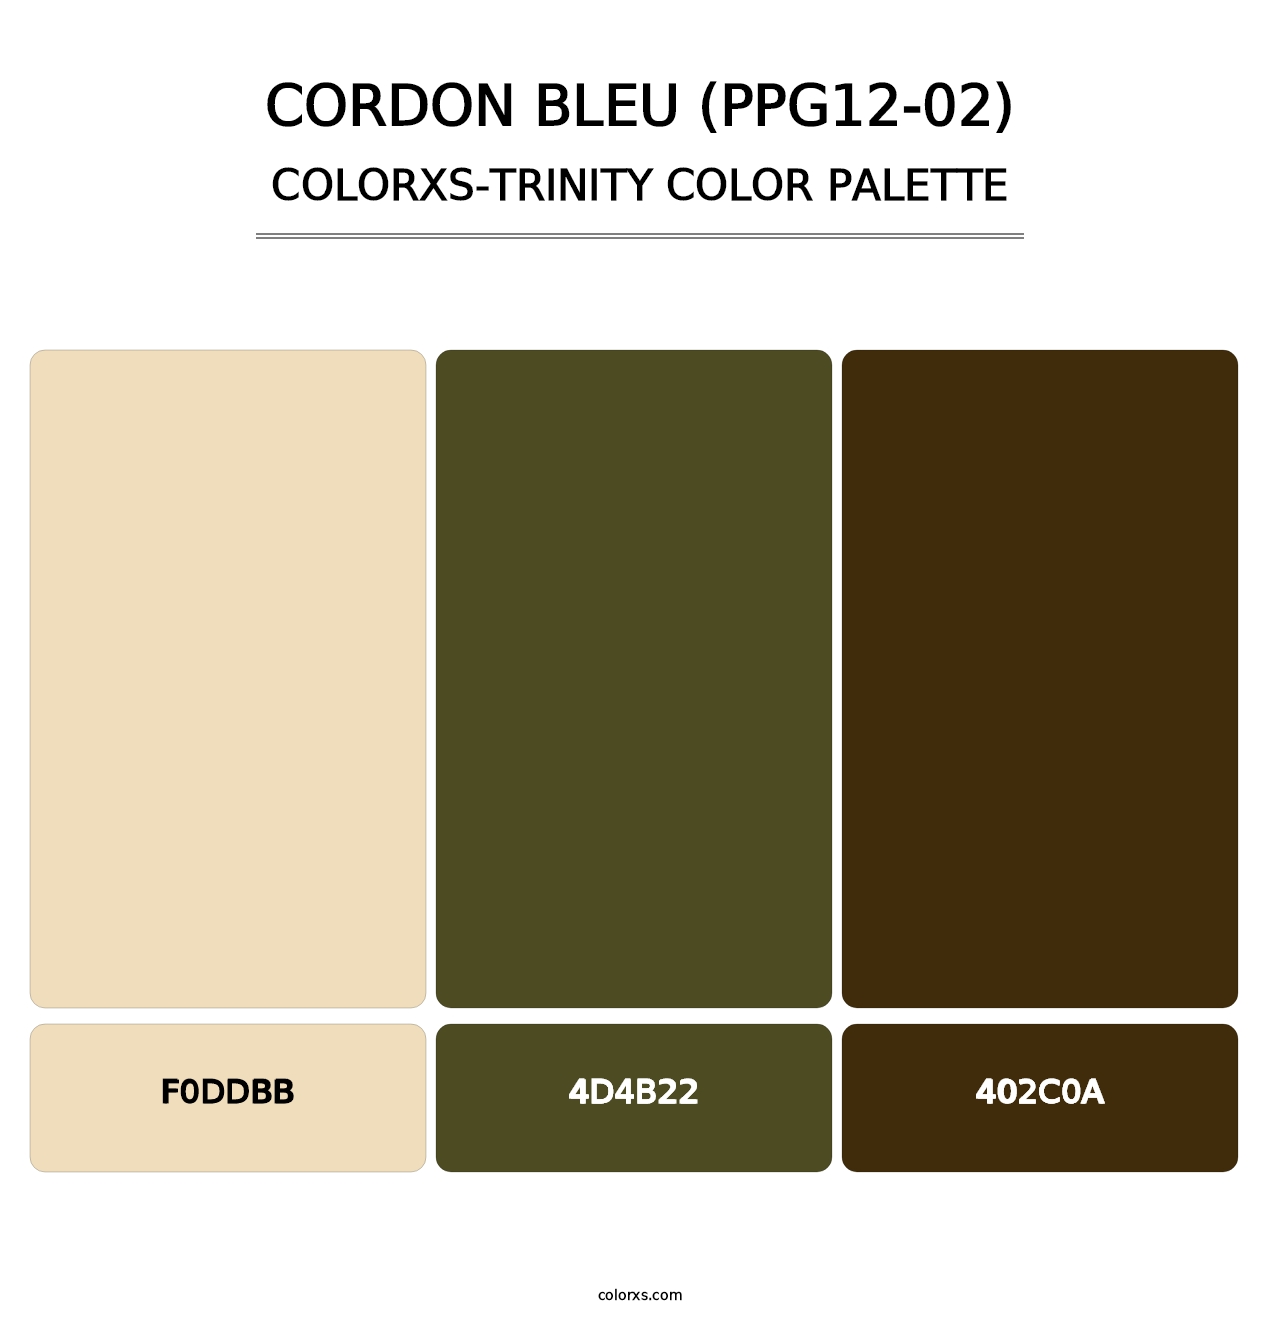 Cordon Bleu (PPG12-02) - Colorxs Trinity Palette